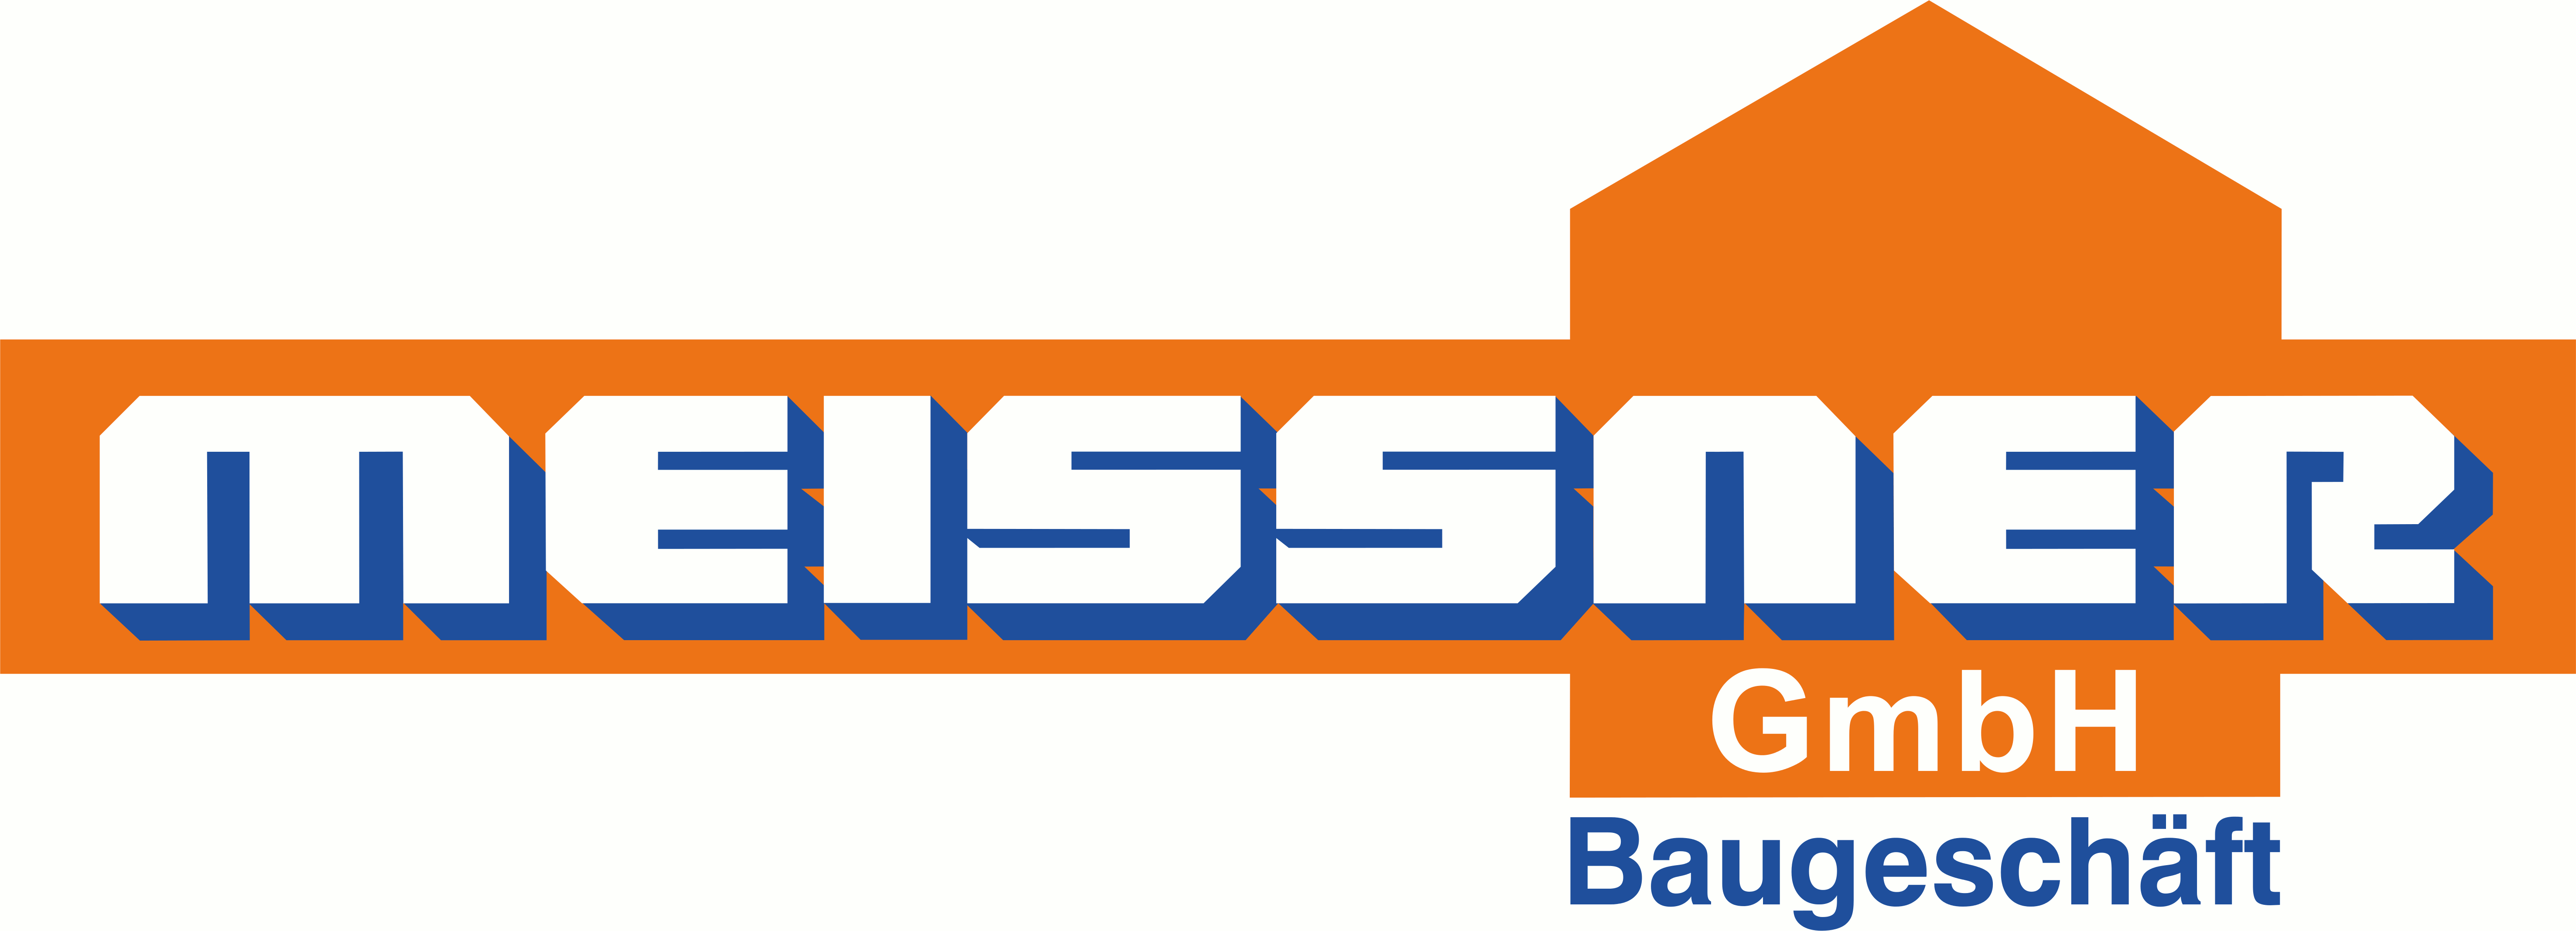 Baugeschäft Manfred Meißner GmbH